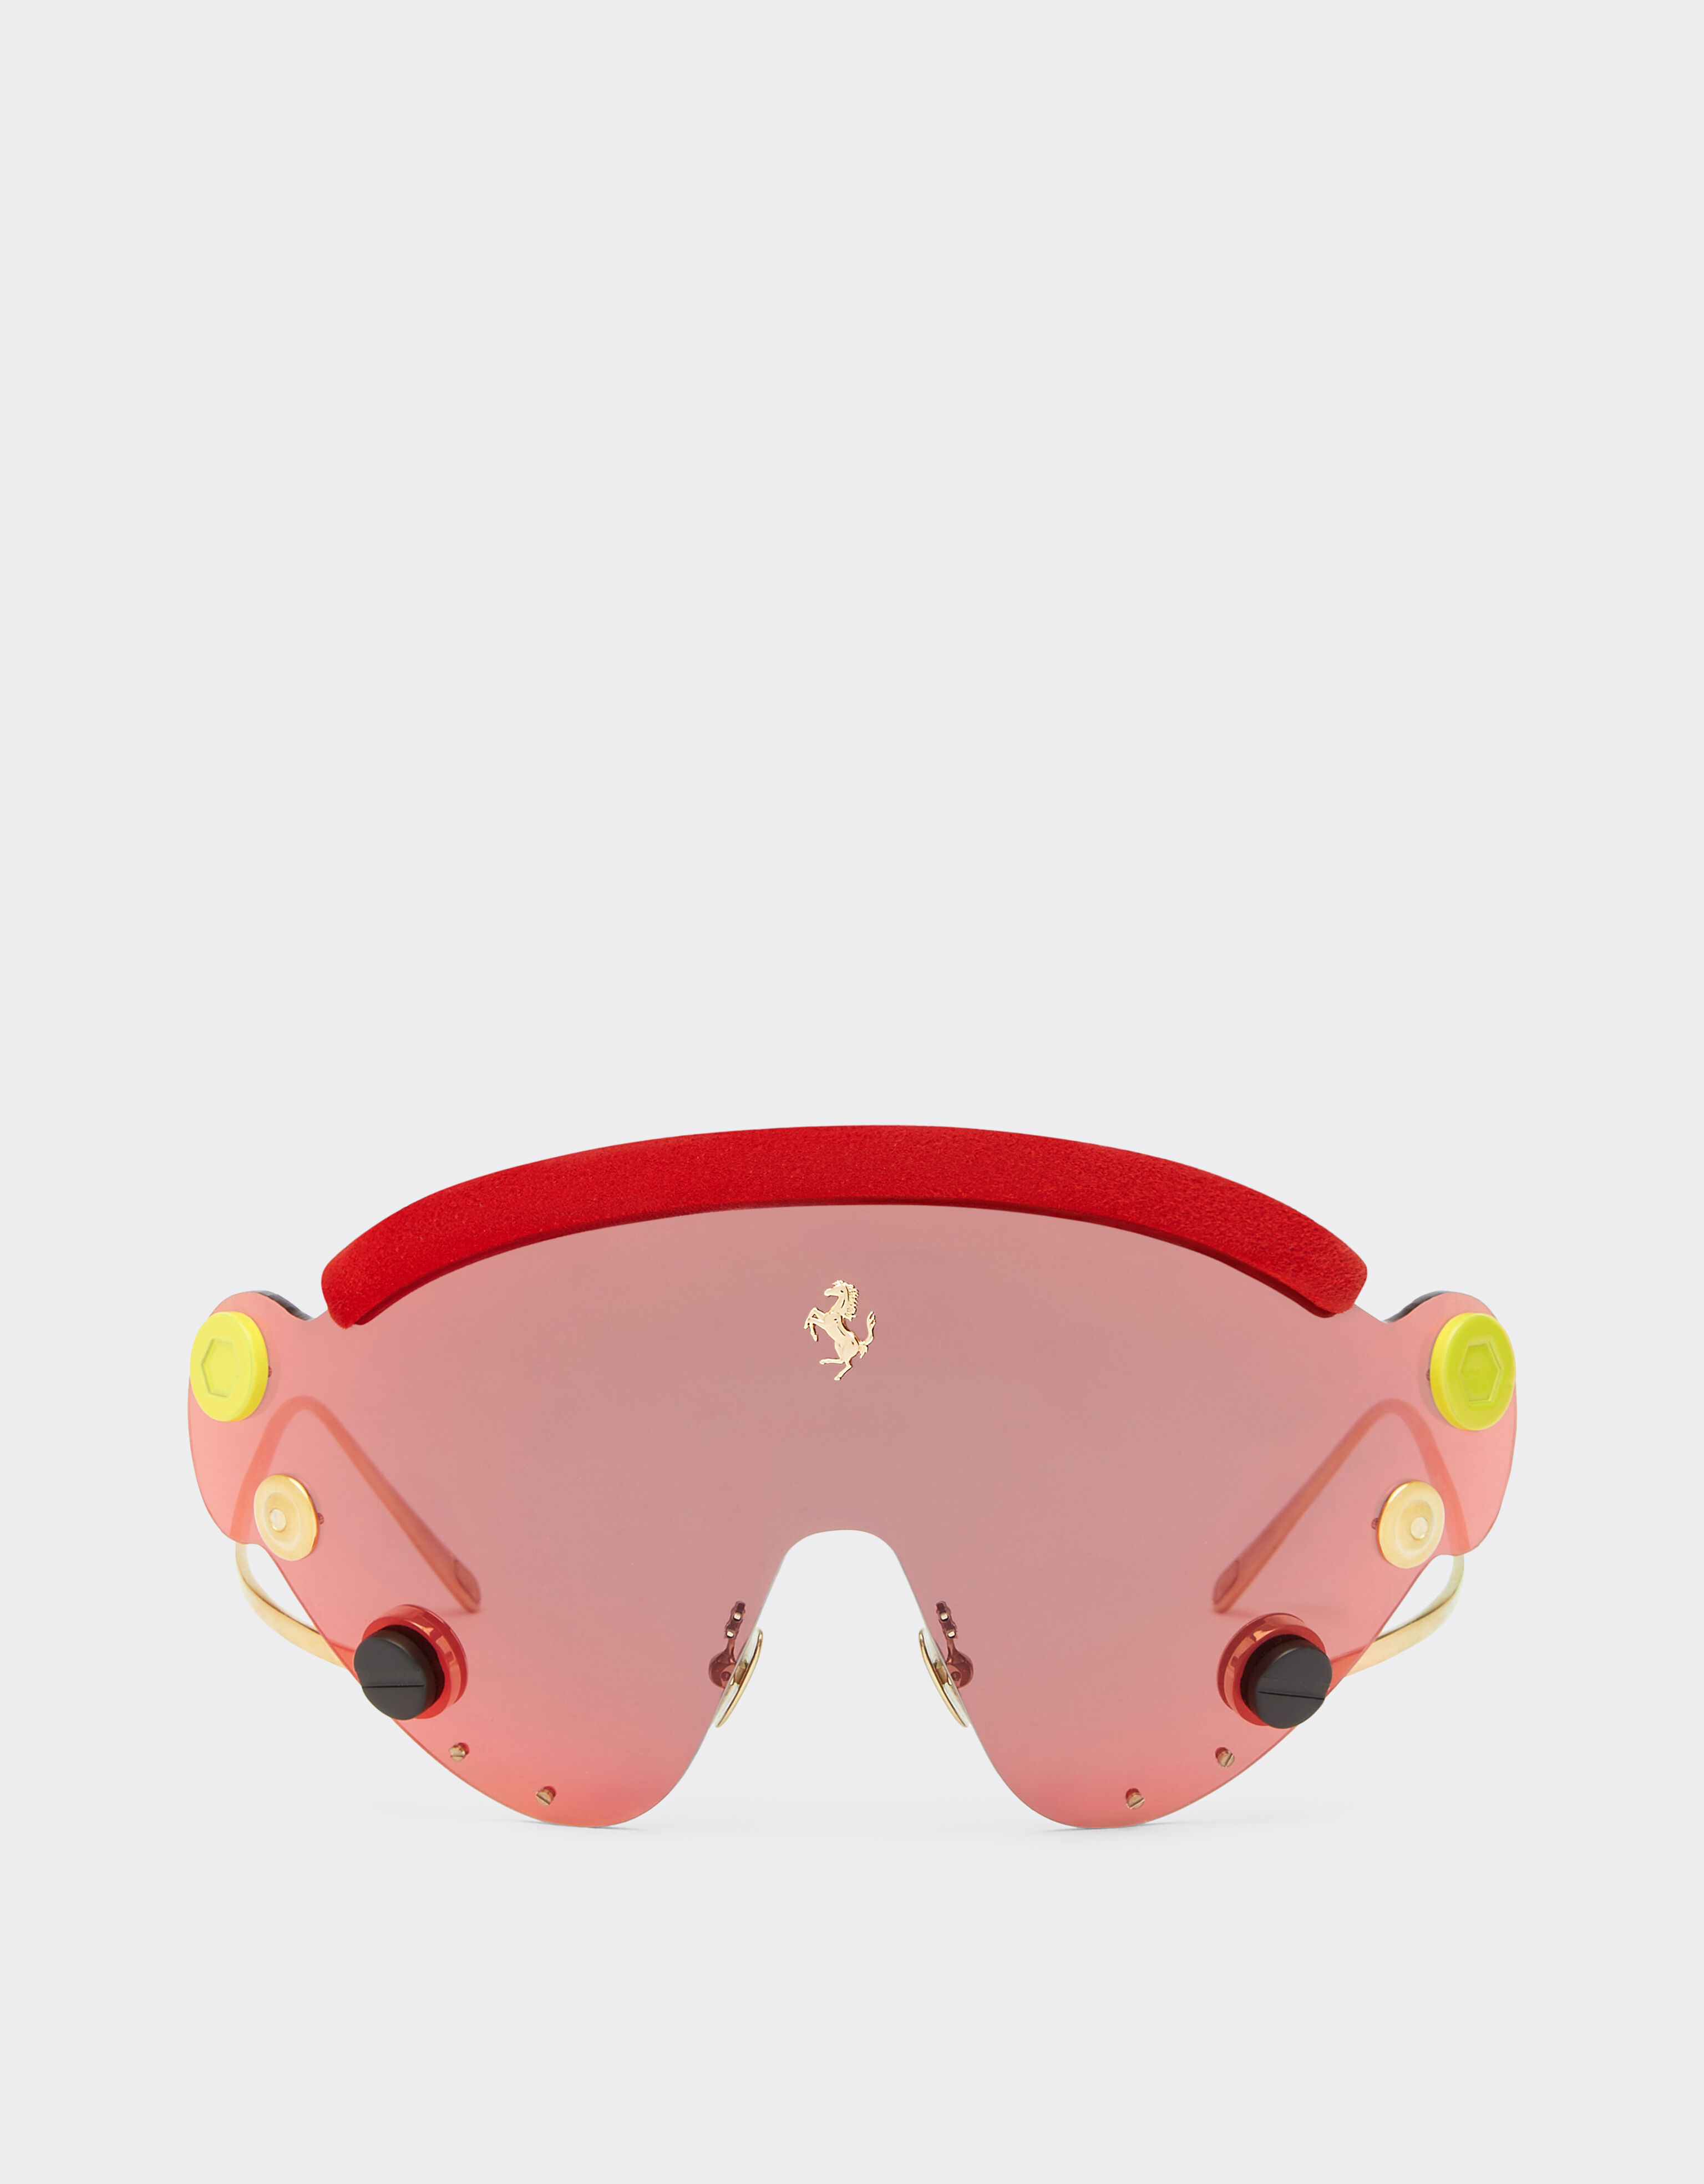 Ferrari Lunettes de soleil masque Limited Edition Ferrari en métal rouge et or avec masque rouge effet miroir Rouge F1243f